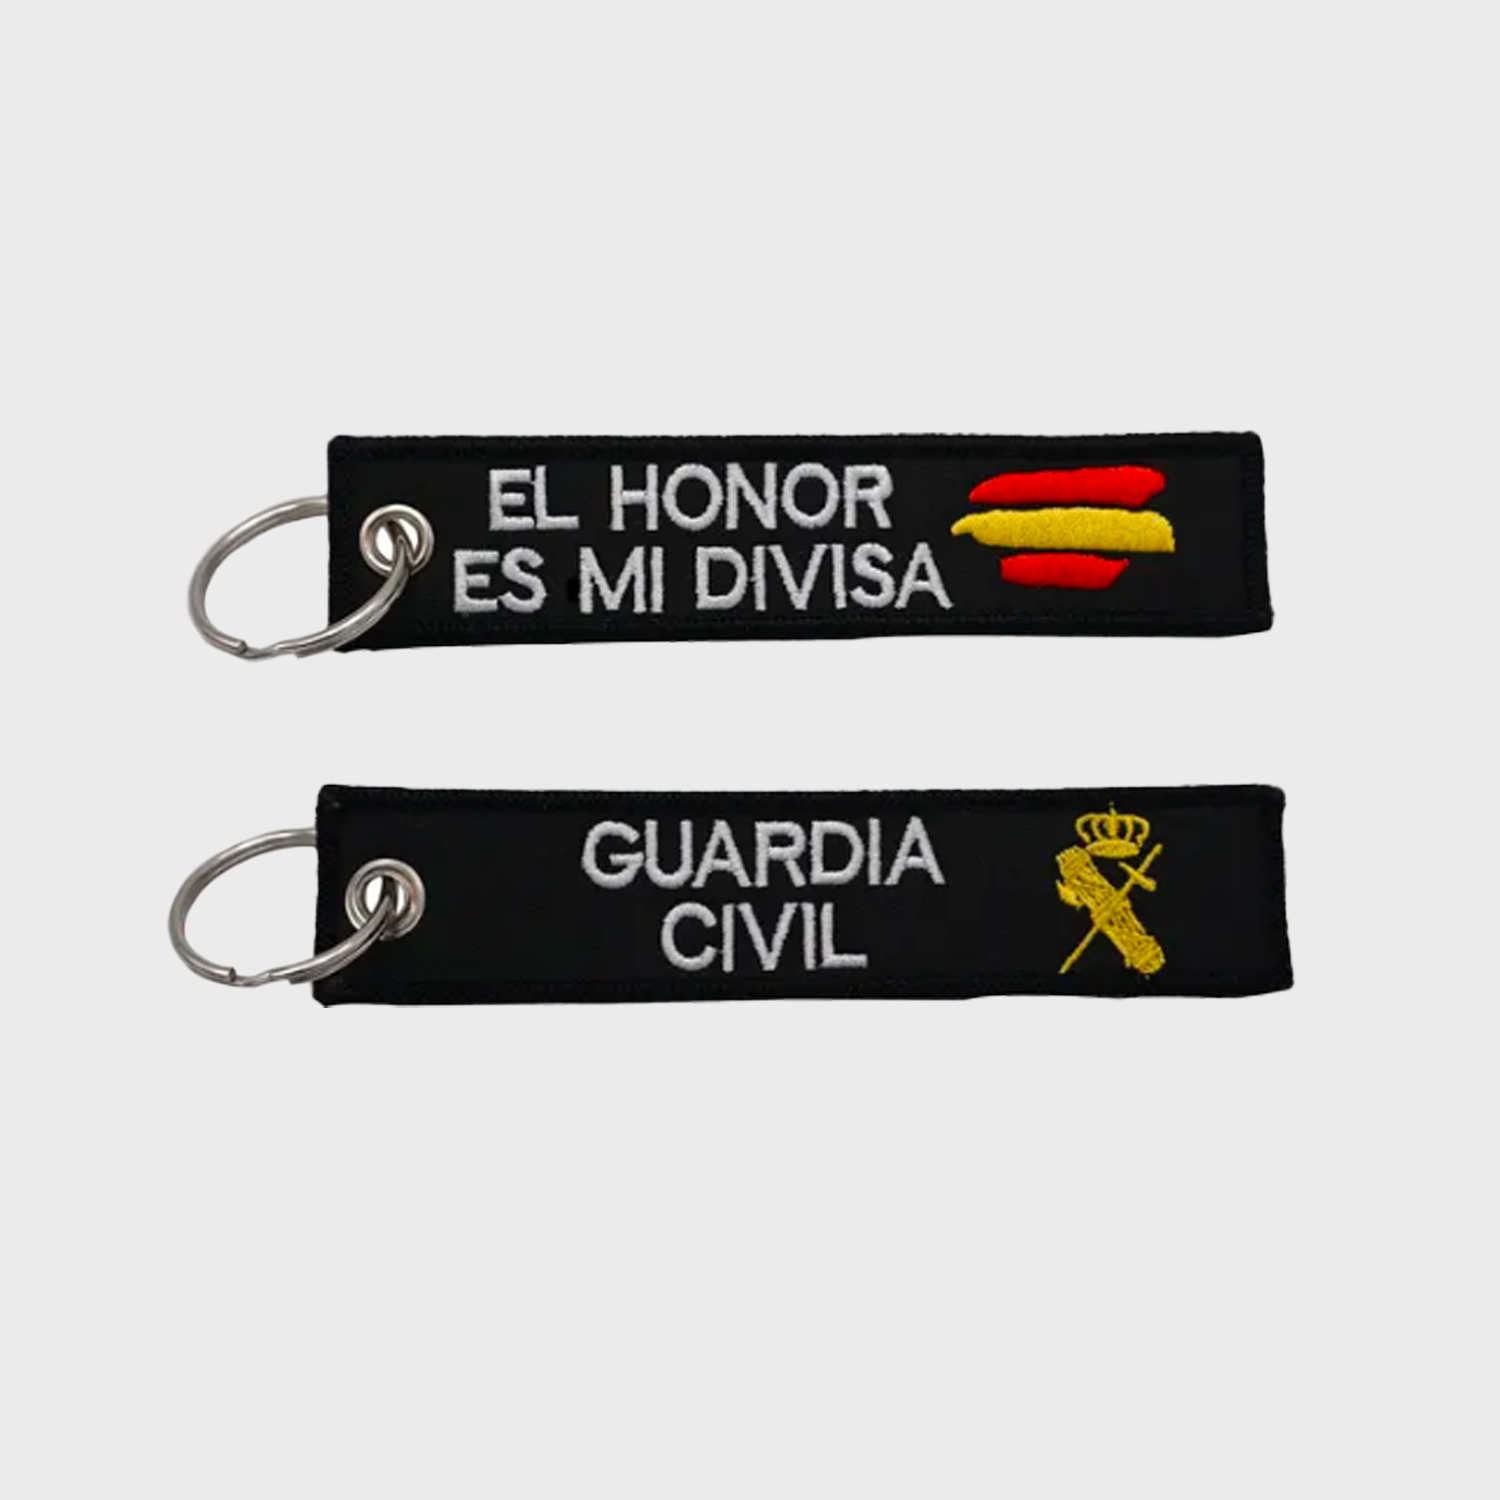 Pulsera GUARDIA CIVIL El Honor es mi divisa